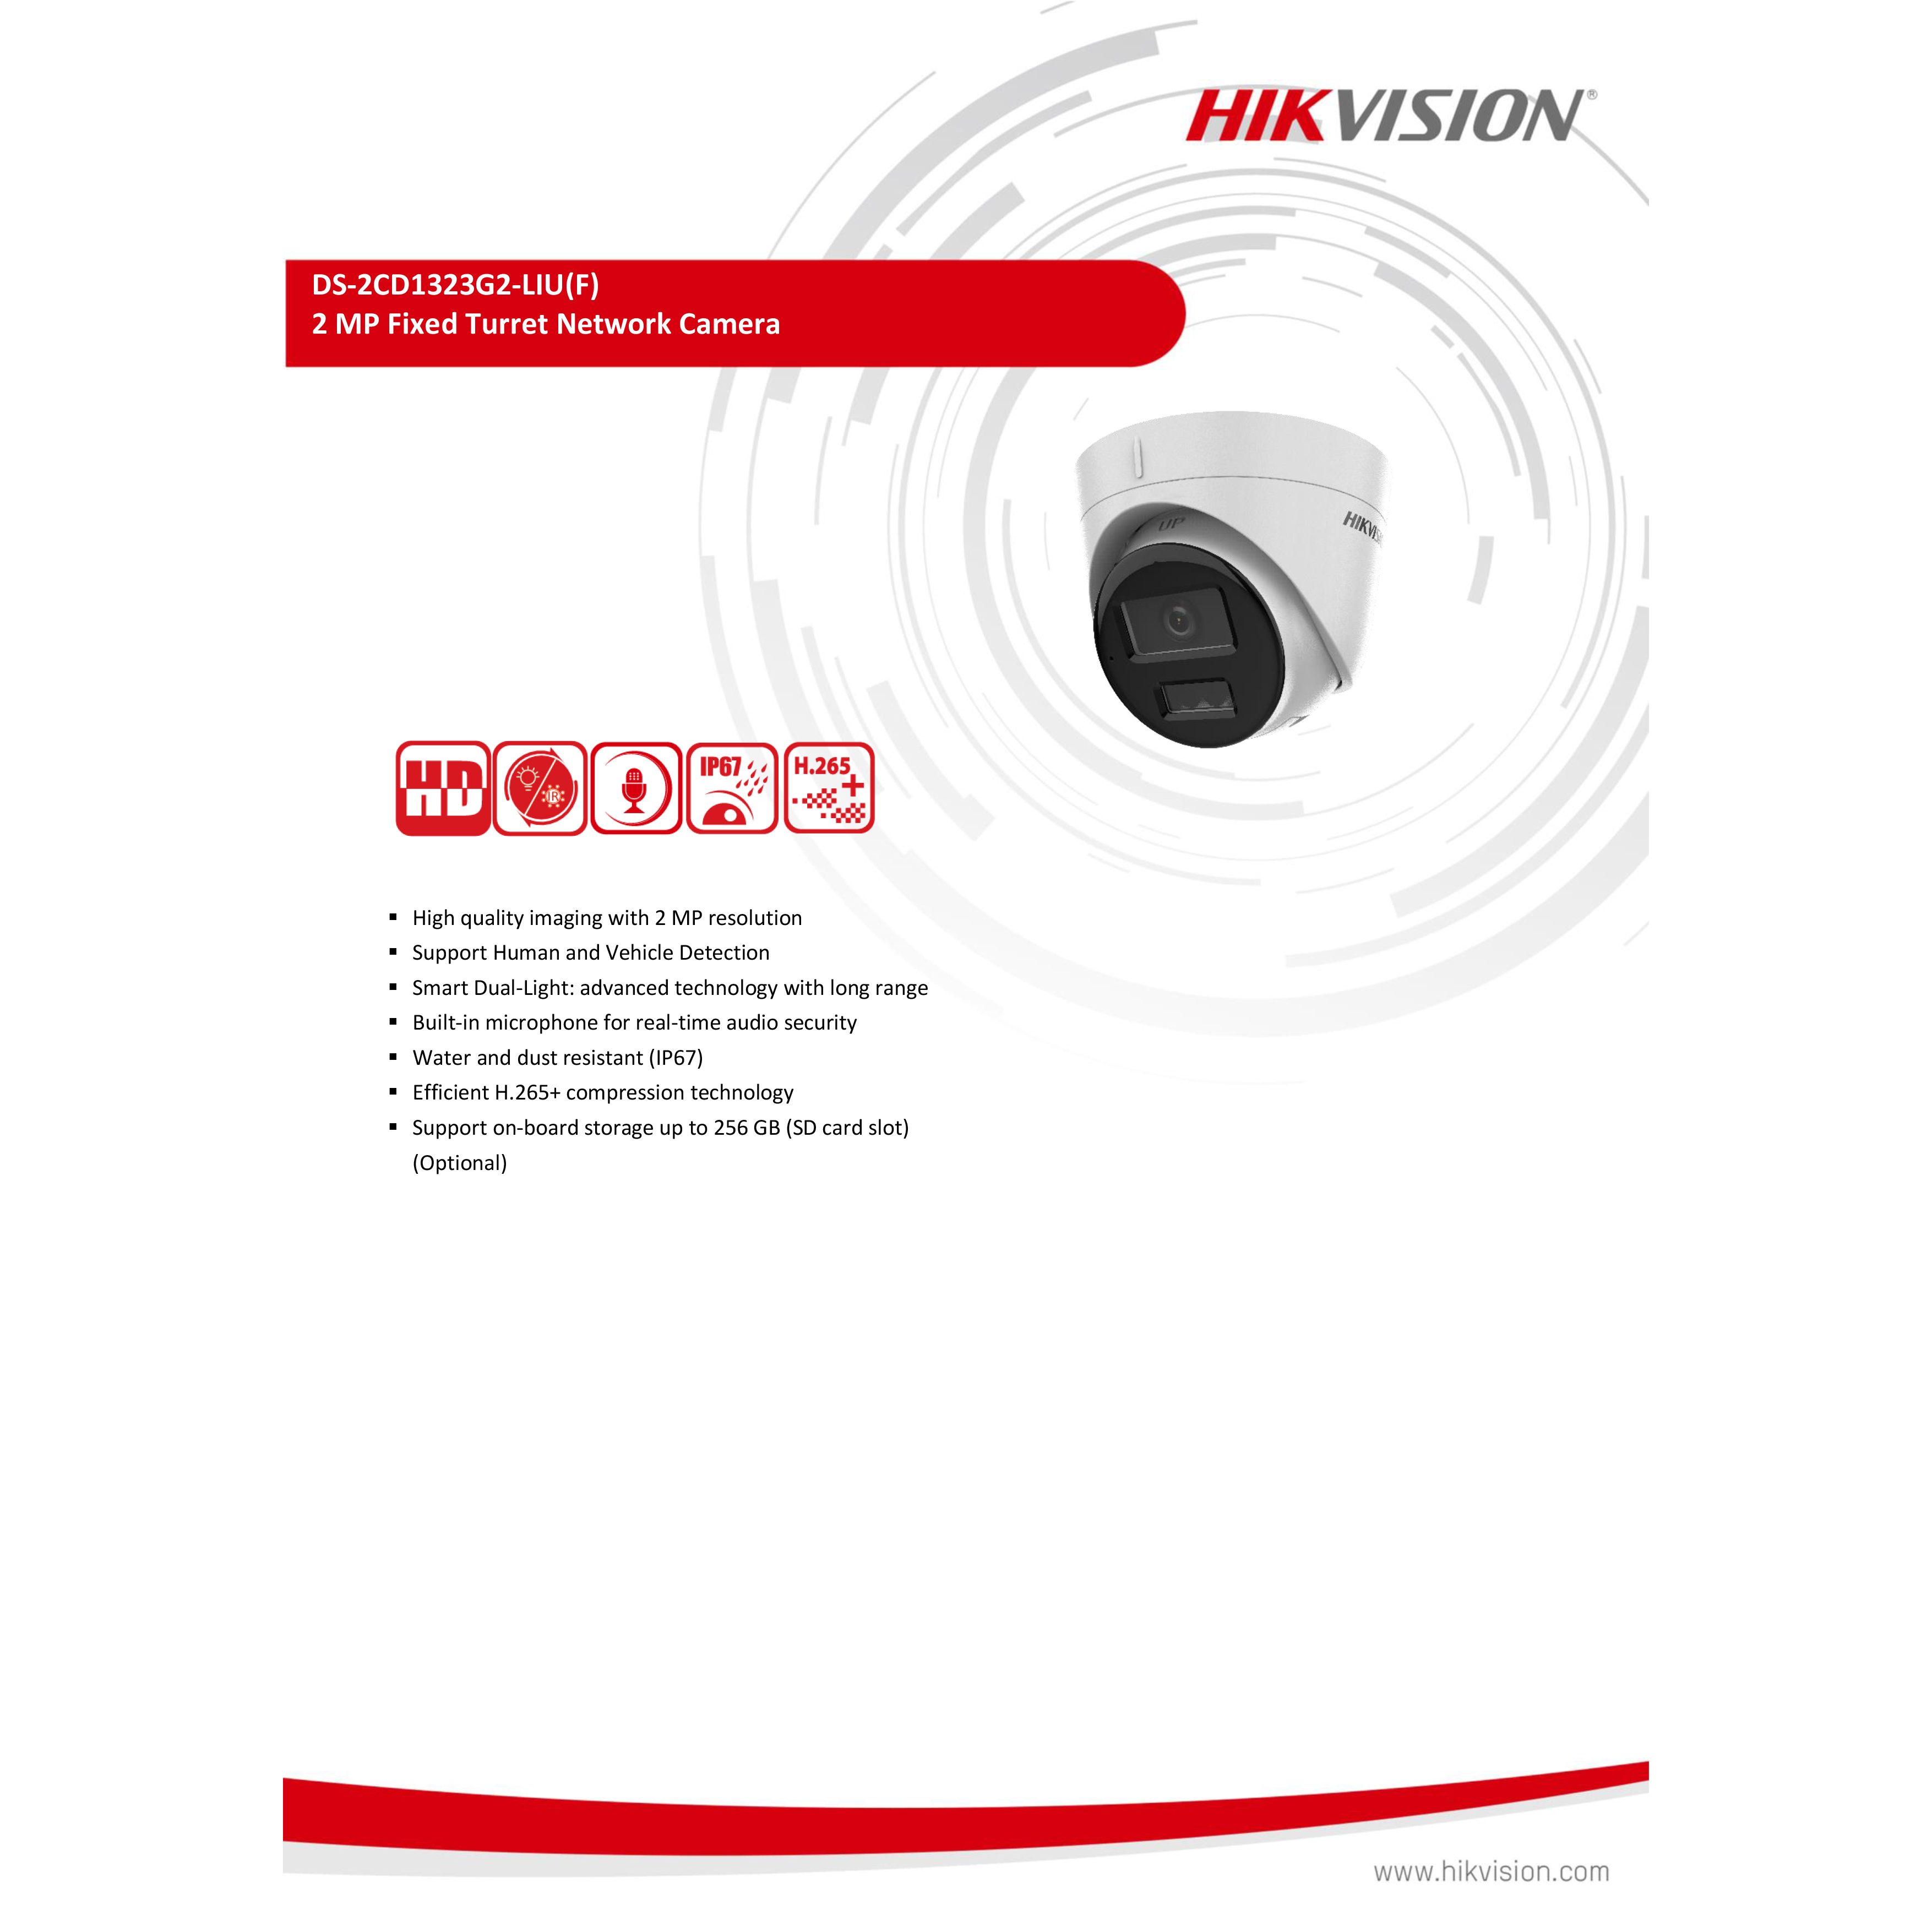 hikvision-ds-2cd1323g2-liu-กล้องวงจรปิดระบบ-ip-2-mp-มีไมค์ในตัว-เลือกปรับโหมดเป็นภาพสี-24-ชม-หรือภาพขาวดำตอนกลางคืนได้